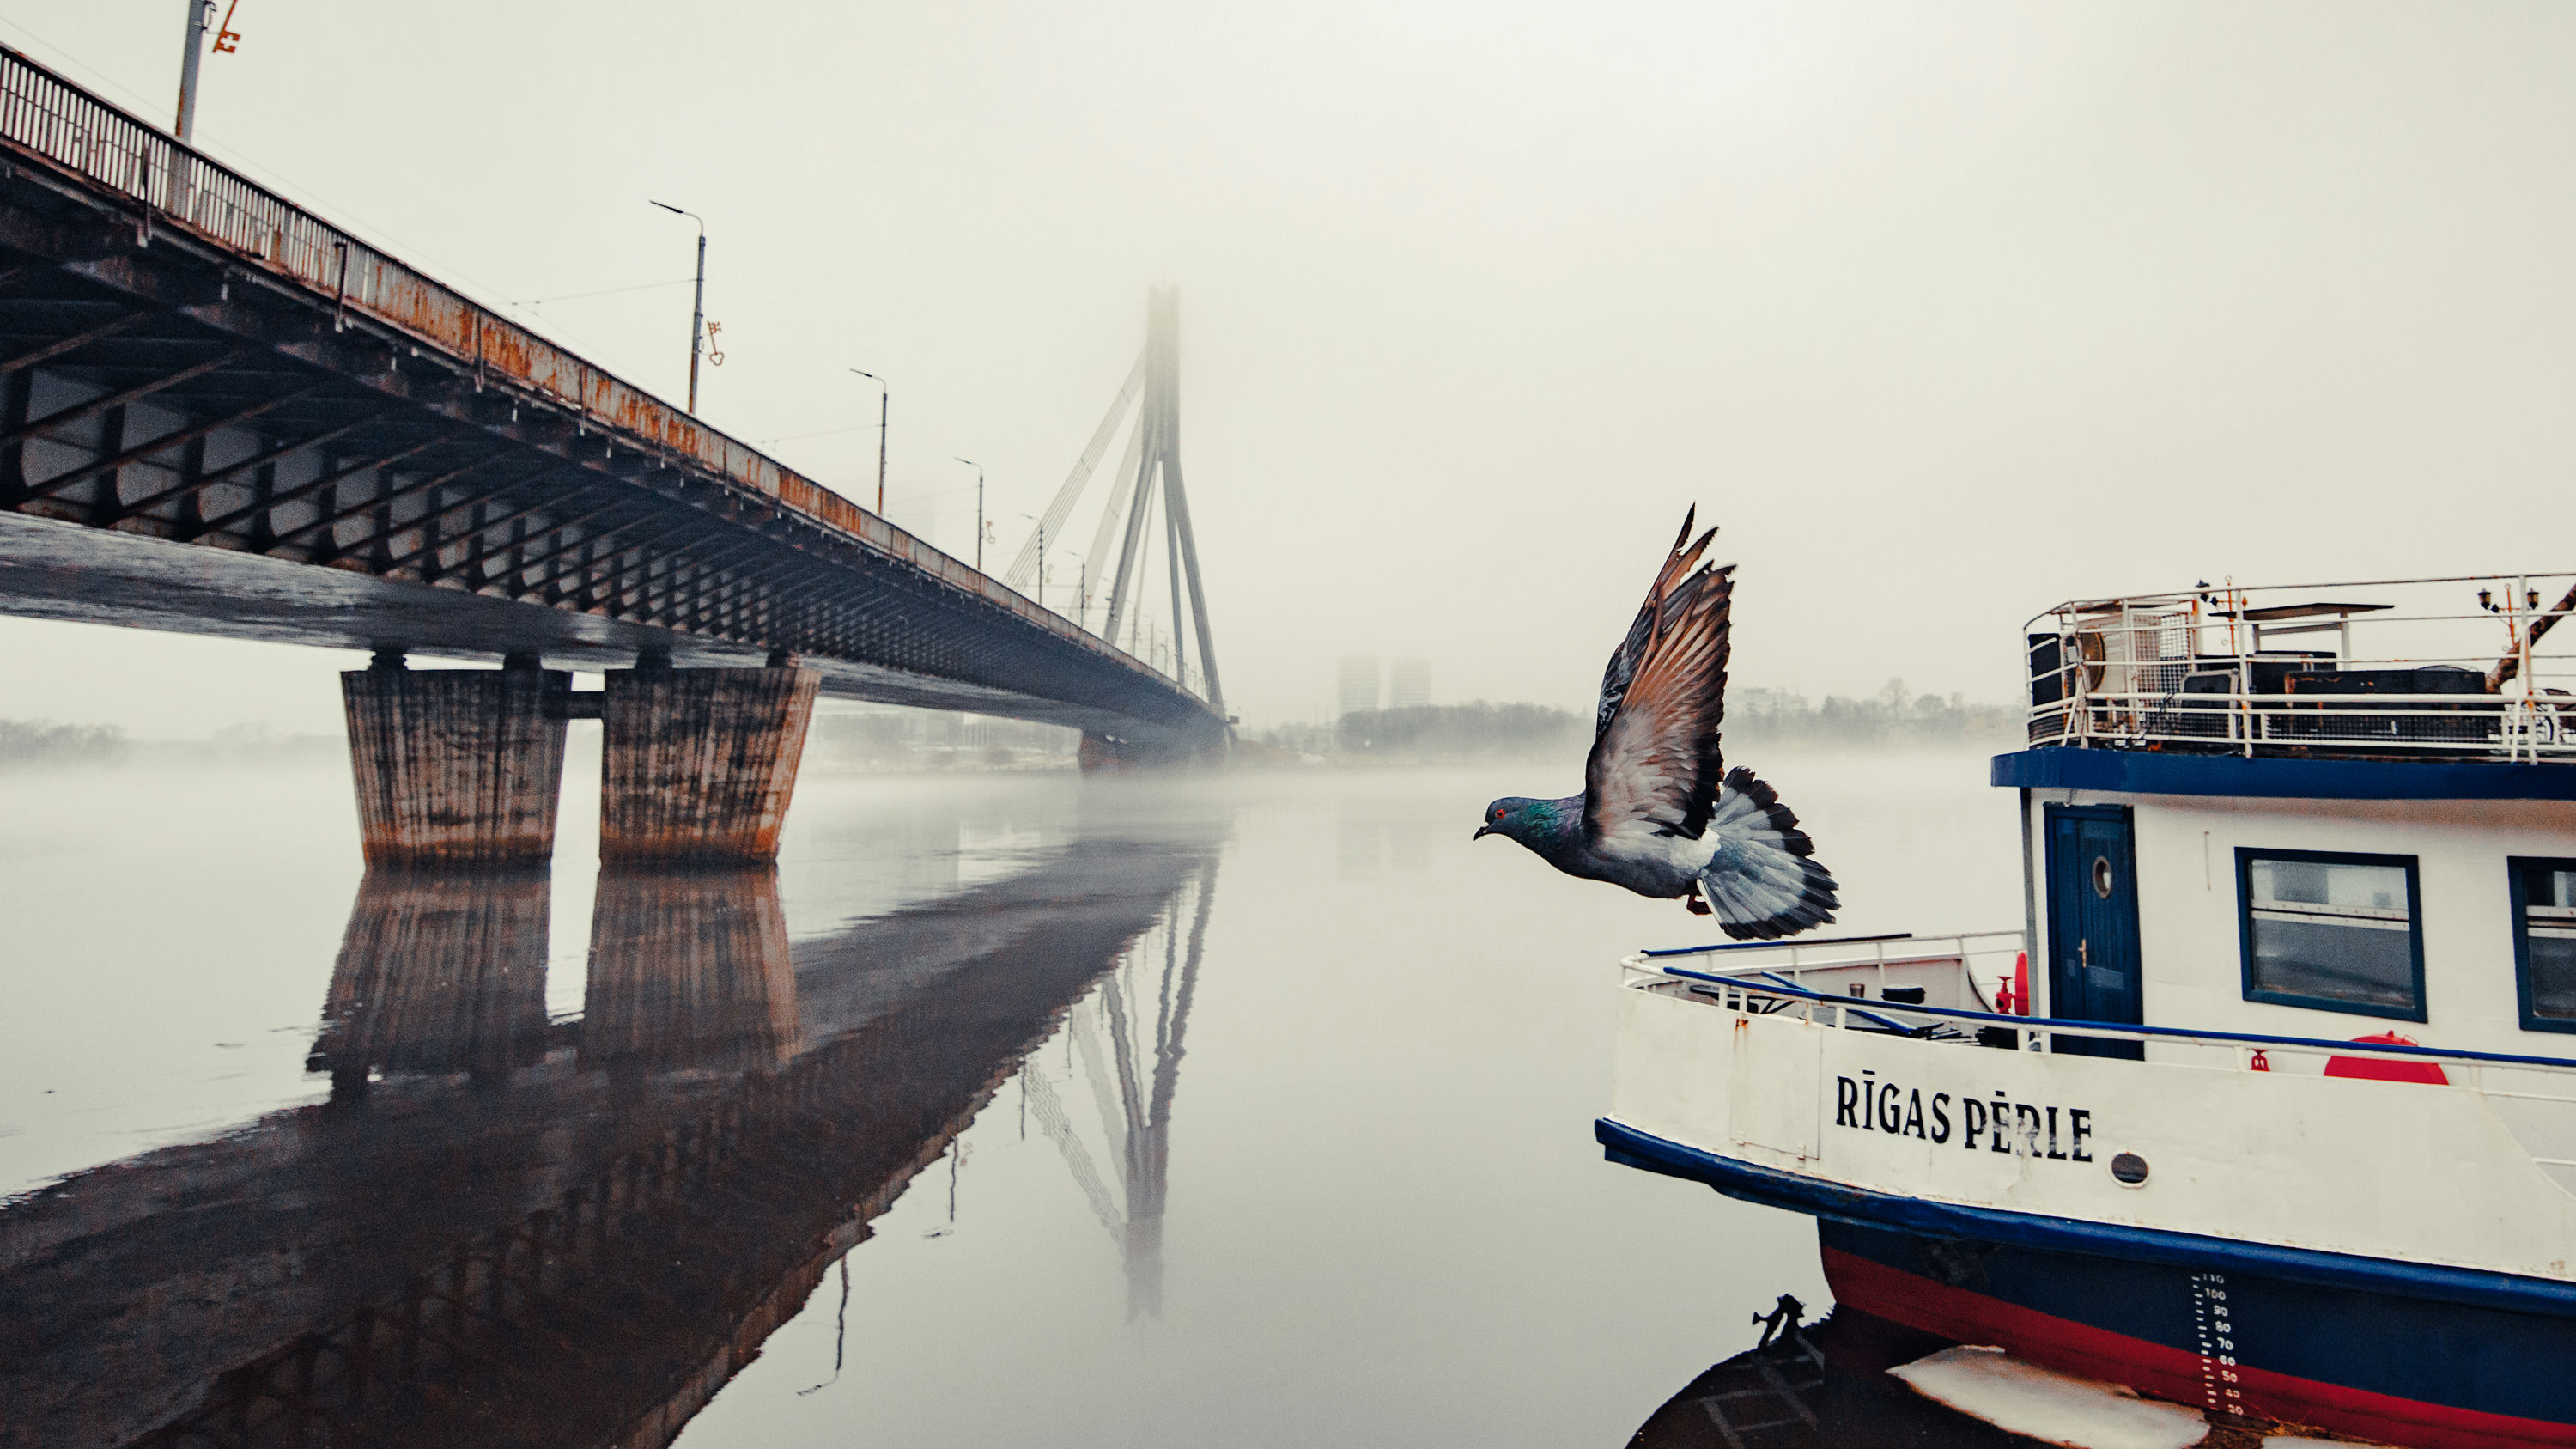 Starptautiskajā fotokonkursā “Capture Your City” spožus panākumus gūst pieci darbi, kuros attēlota  Rīga